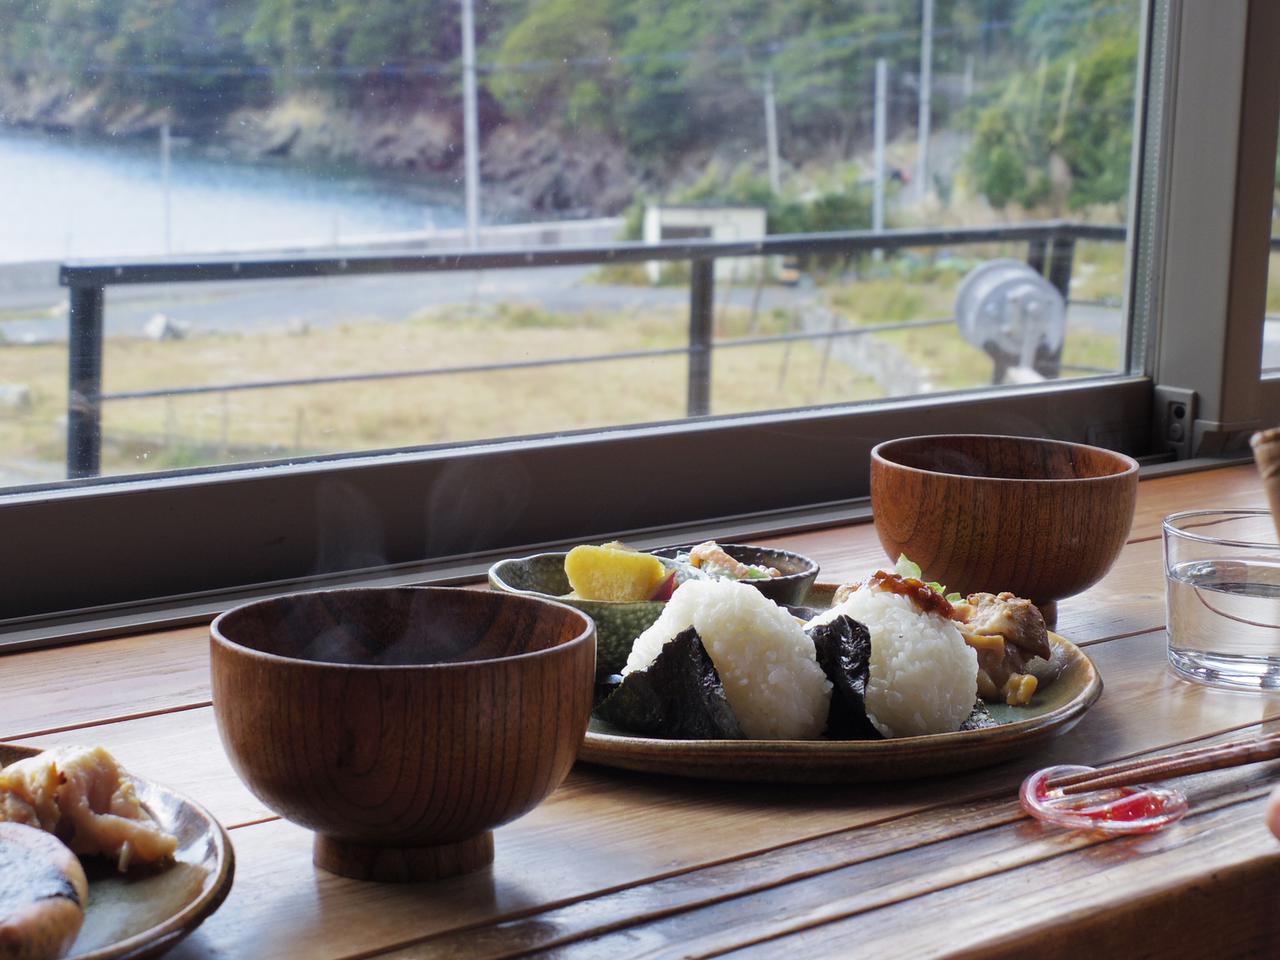 キャンプで和朝食 キャンプの朝は和食もおすすめ お手軽に作れる和食レシピをご紹介 お役立ちキャンプ情報 21年05月28日 日本気象協会 Tenki Jp